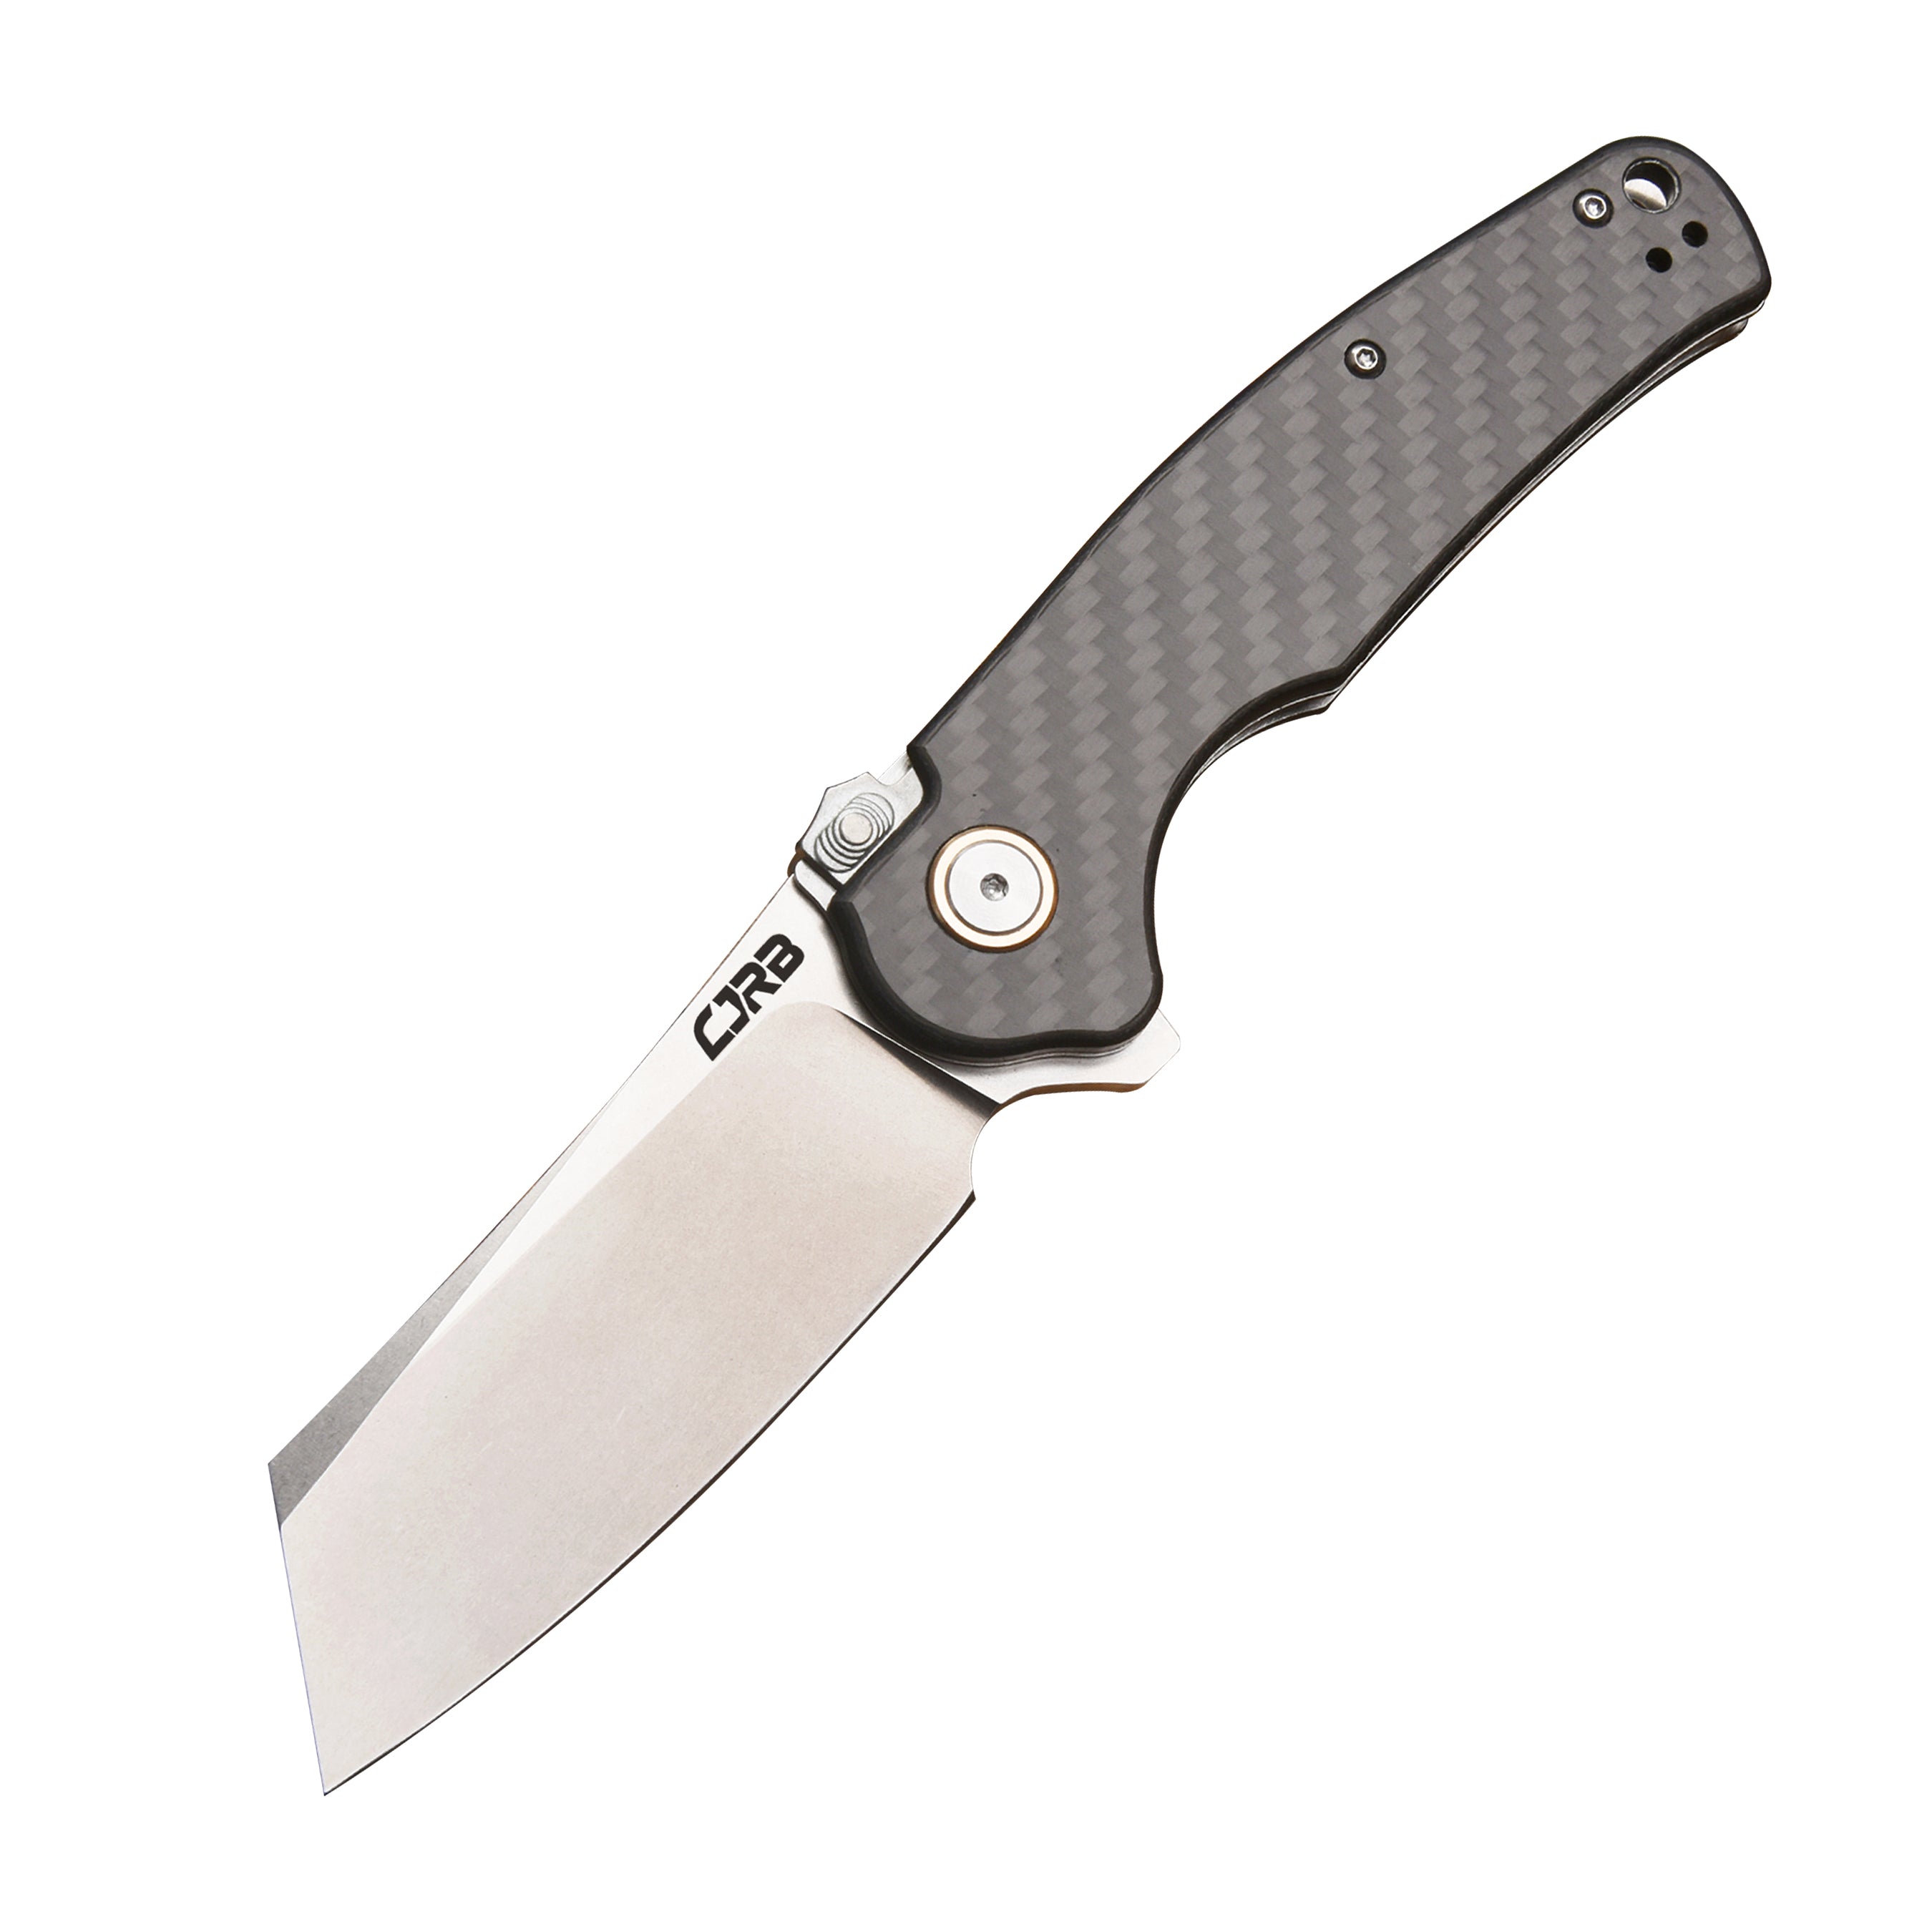 CJRB Crag J1904R AR-RPM9 Steel Blade Carbon Fiber Handle Folding Knives